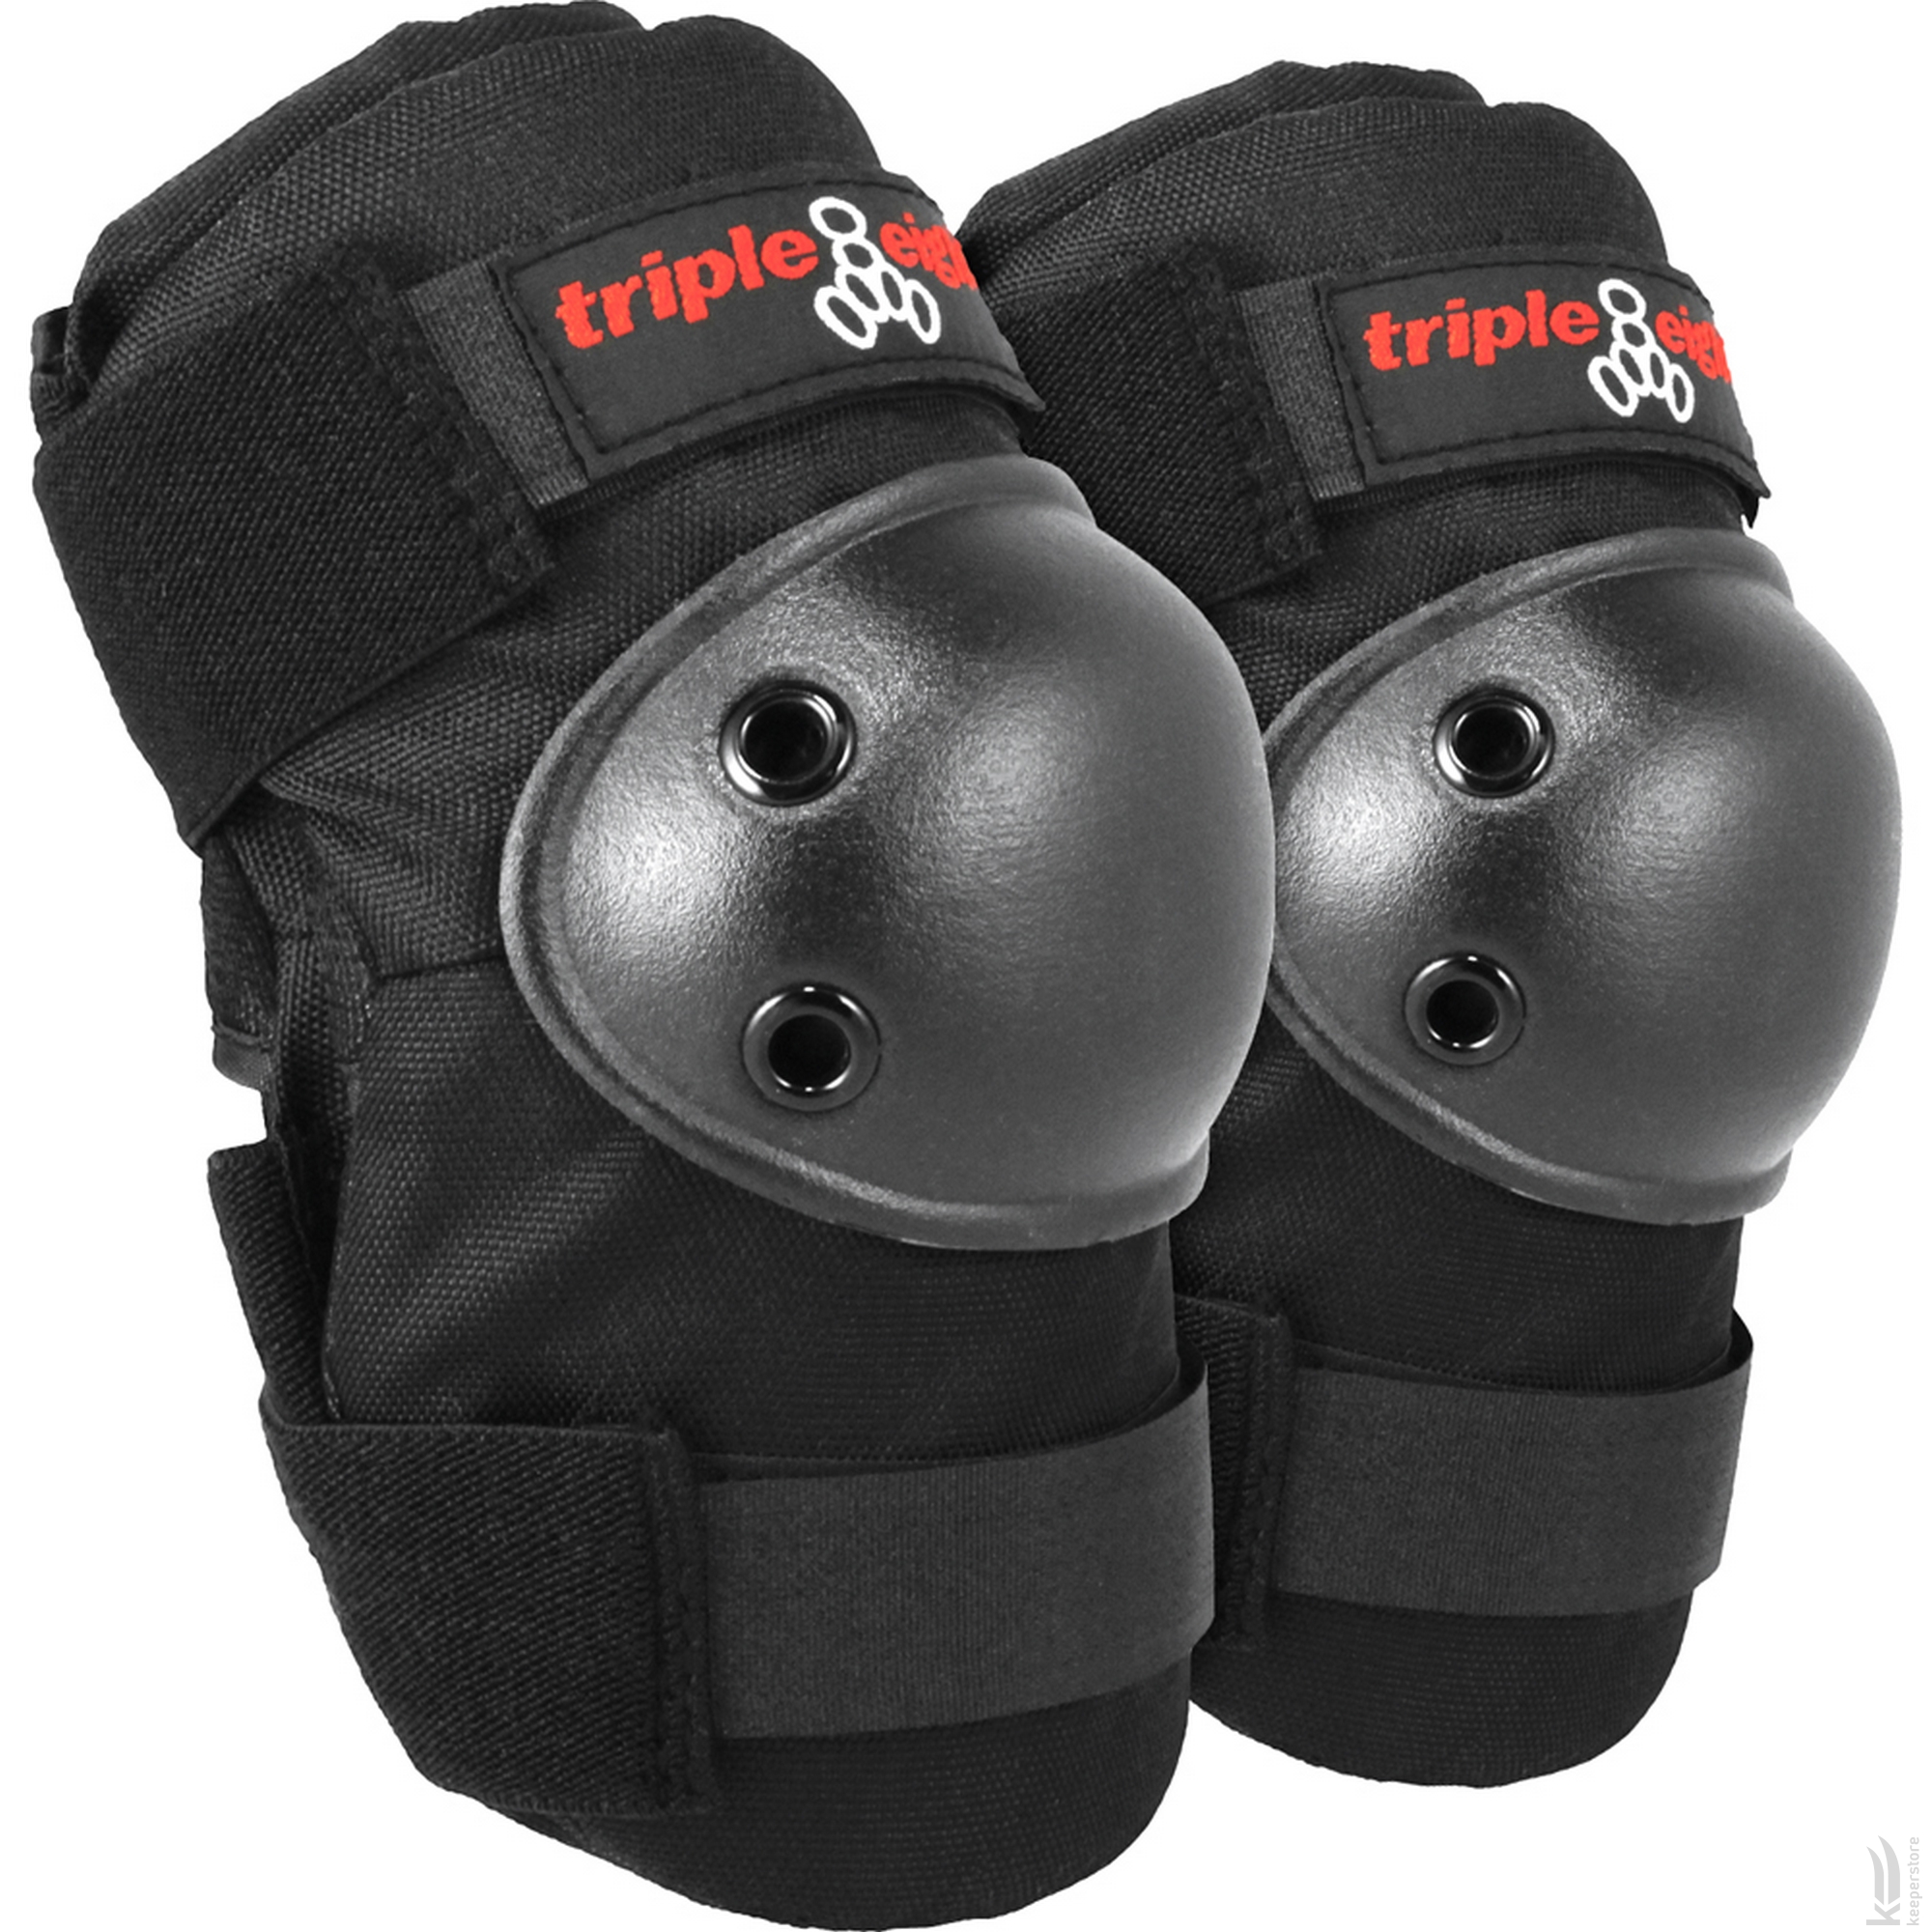 Комплект защиты Triple8 Saver Series 3-Pack (L) отзывы - изображения 5